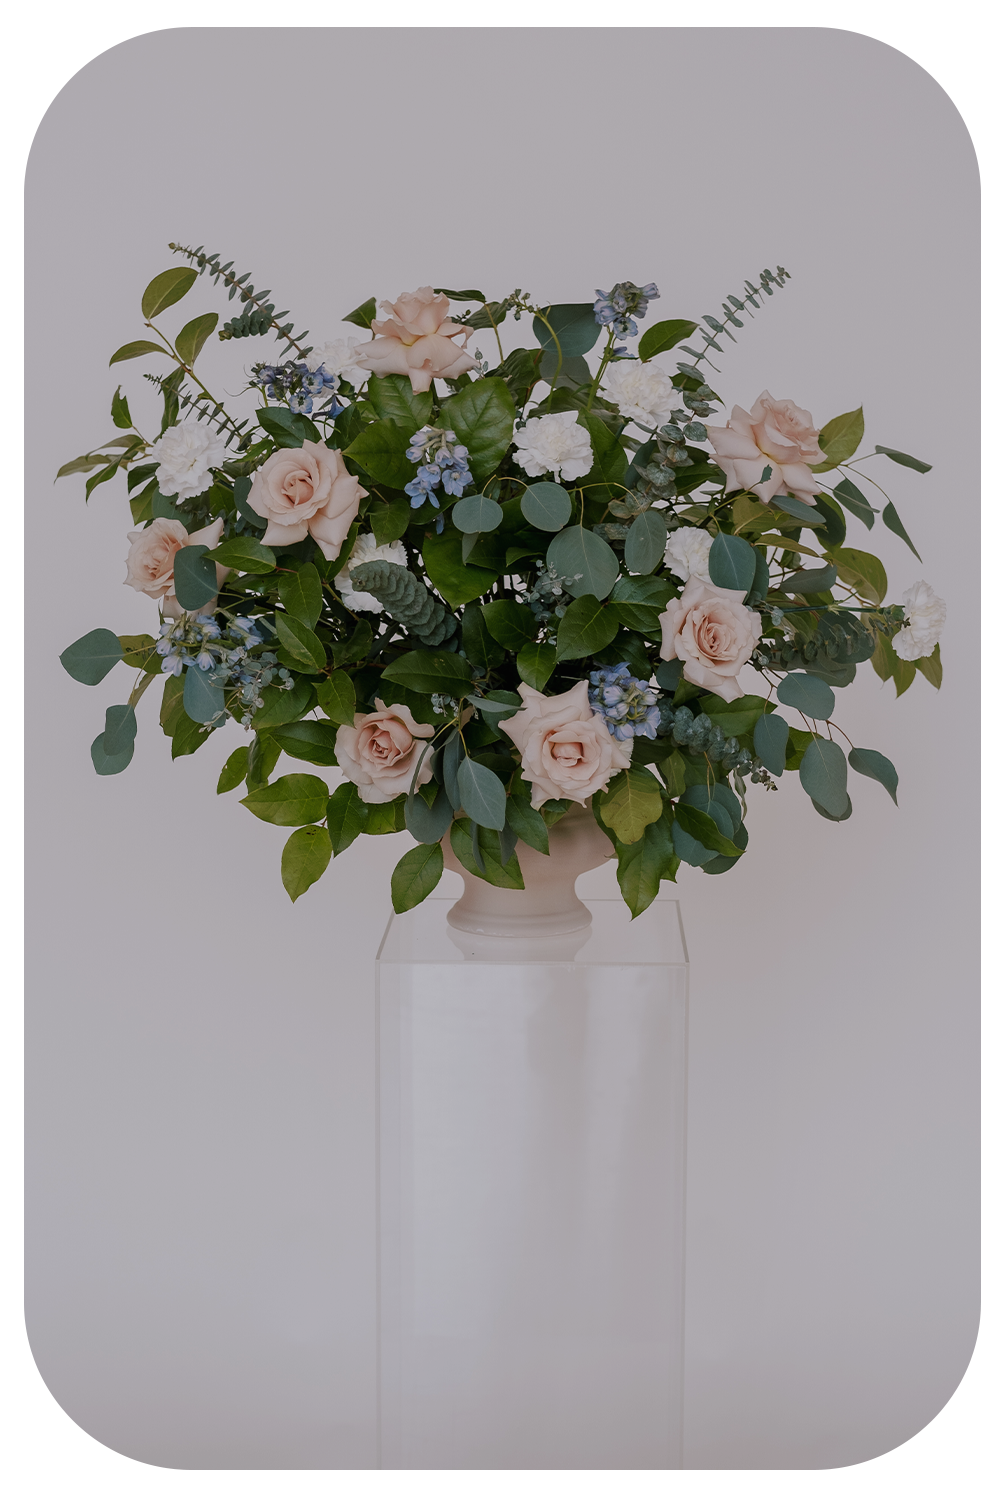 Floral tape or foam holder for bouquets? : r/Weddingsunder10k